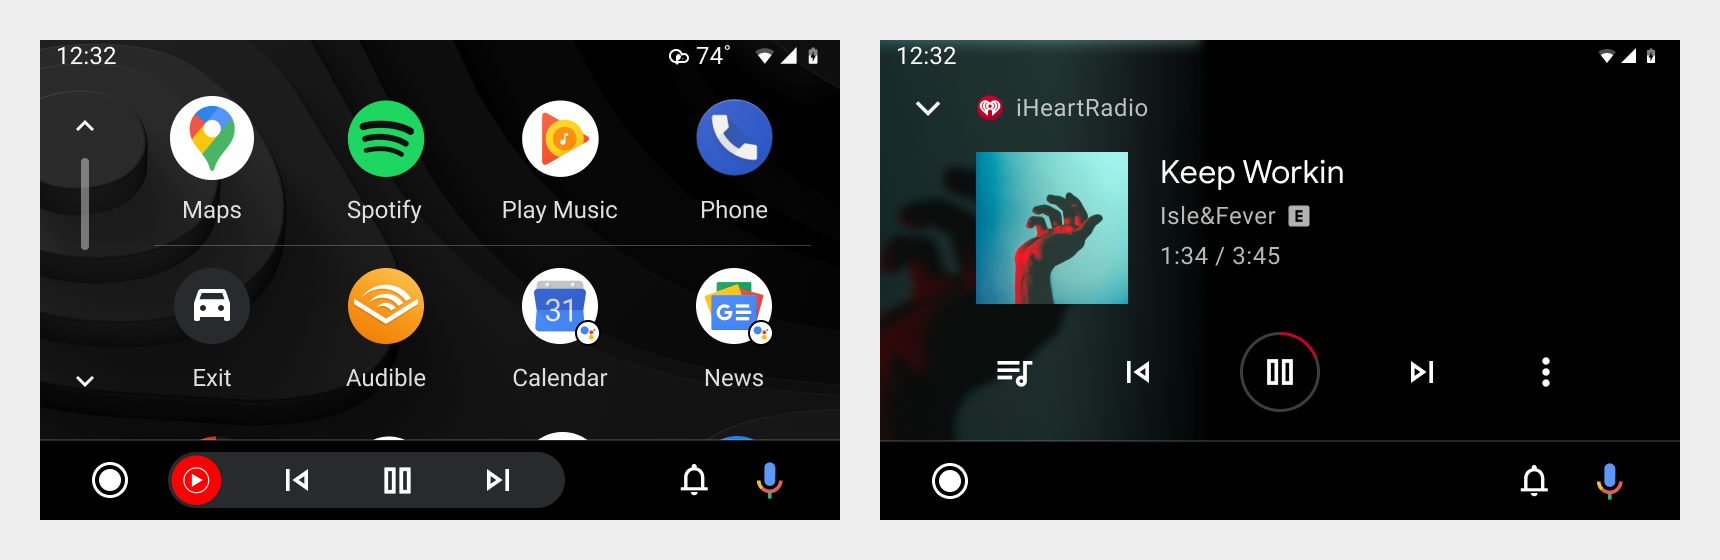 Screenshots des App Launchers und des Bildschirms für die Medienwiedergabe von iHeartRadio